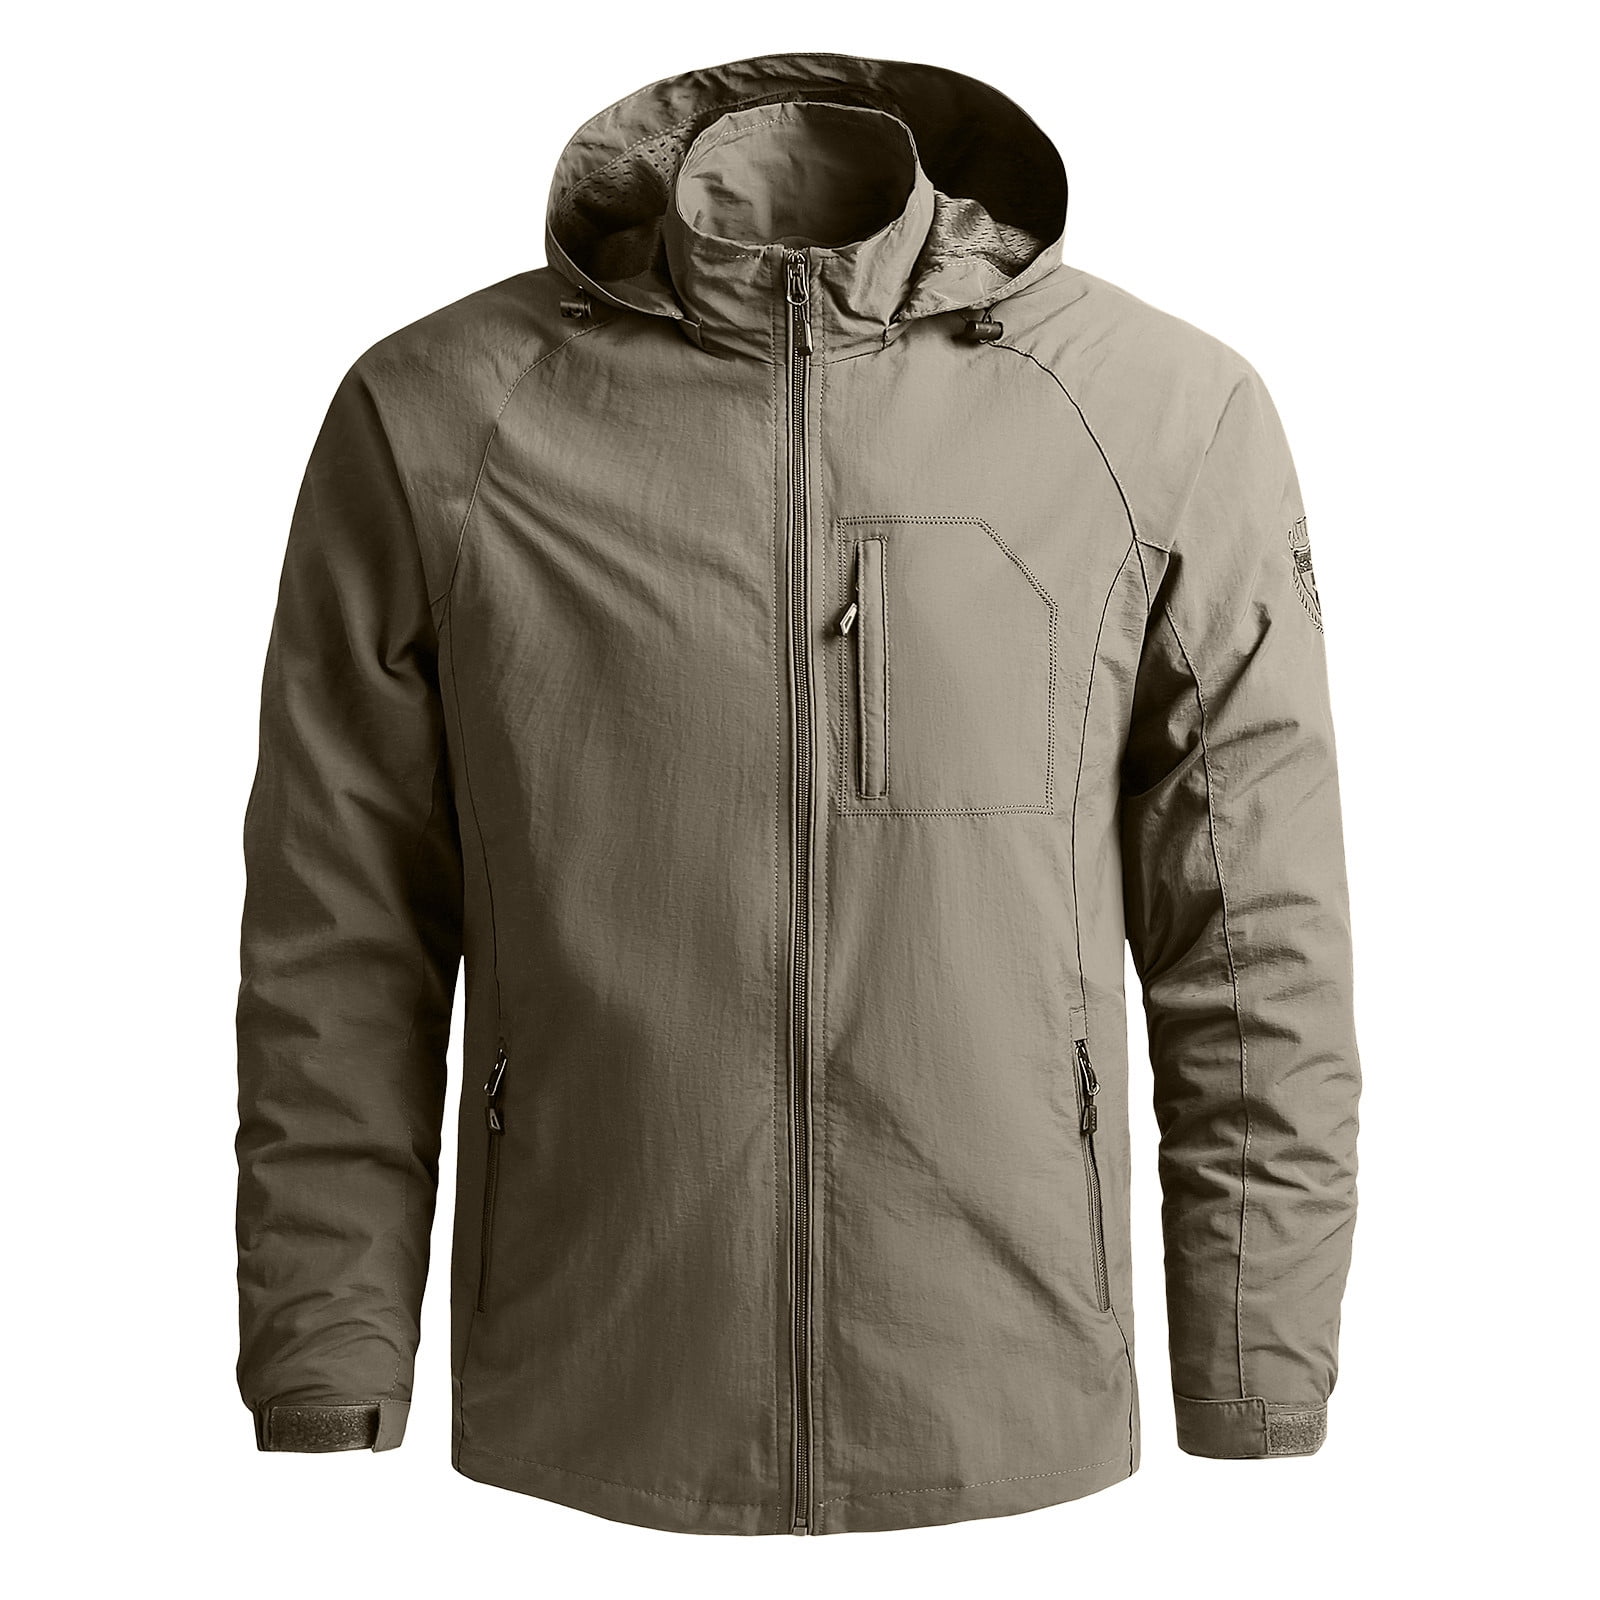 YSLMNOR Winter Jackets for Women Plus Size Raincoat Wind Breakers Lightweight Zip Up Hooded Outwear Rain Jacket Trench Coat